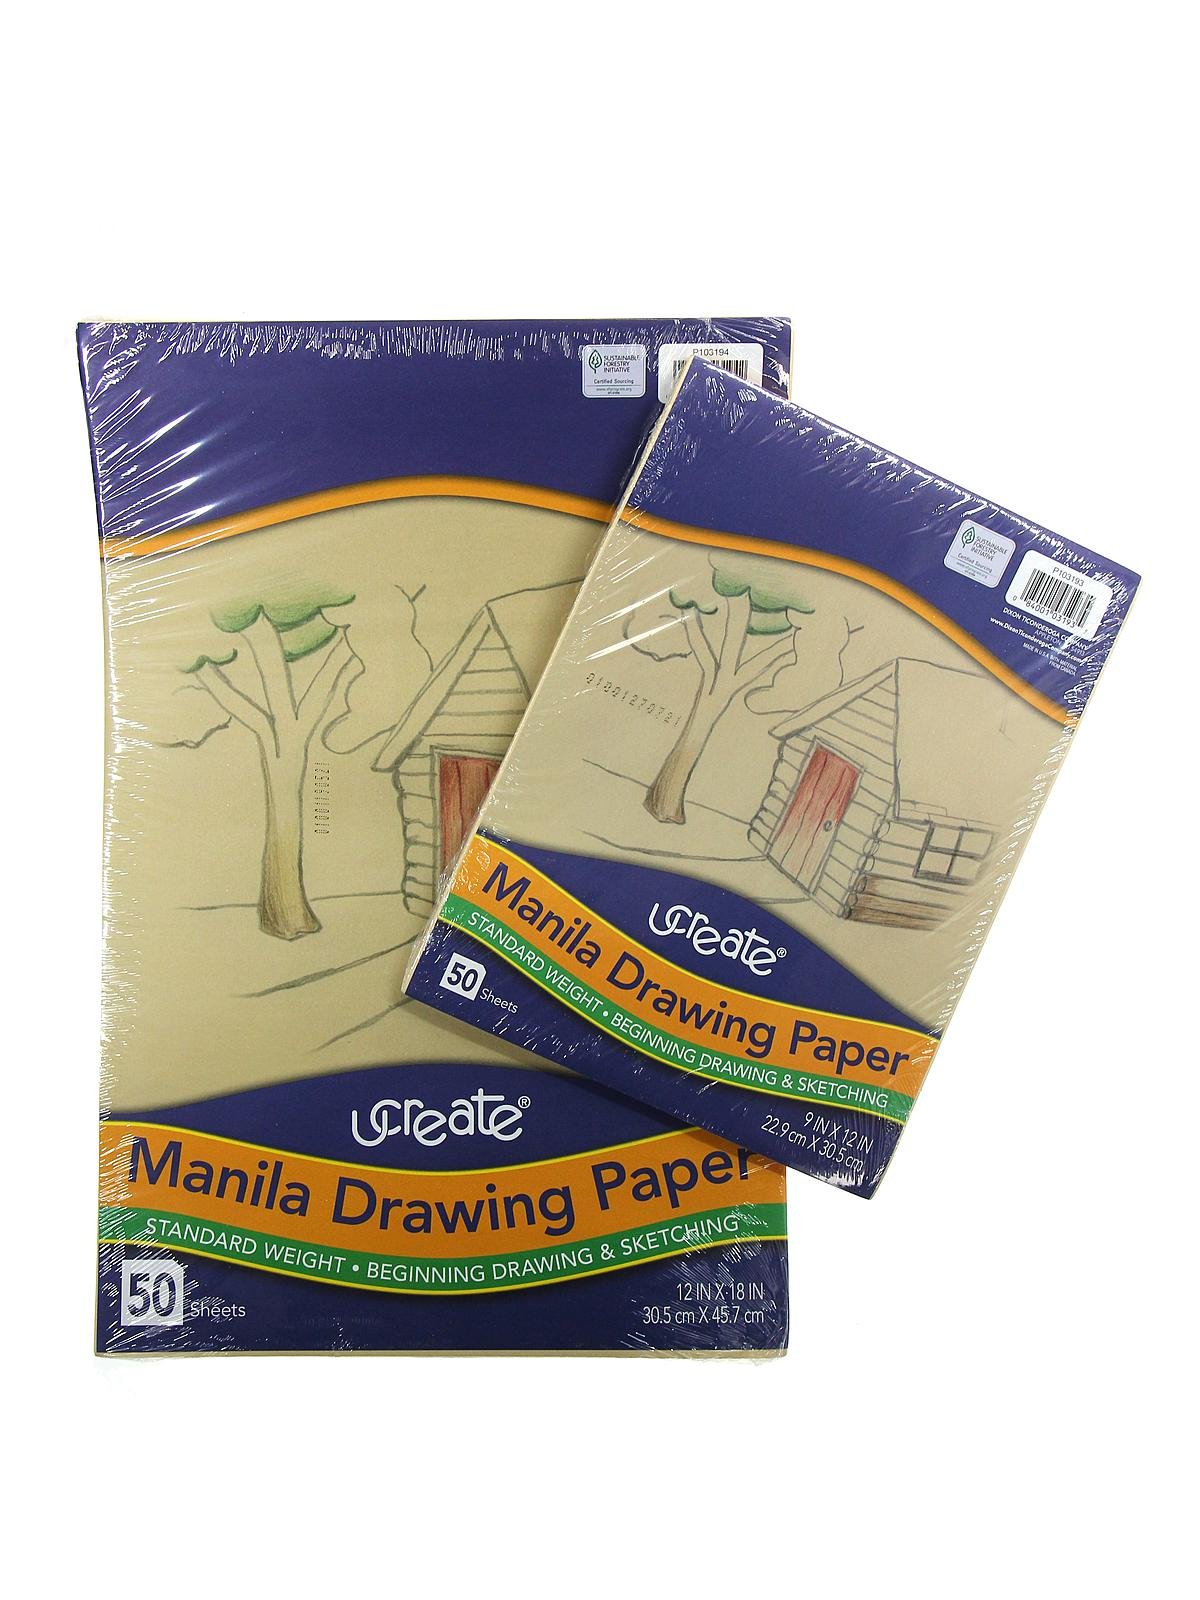 2 Pkgs Pacon Art1st Lightweight Textured Manila Paper 50 Sheets Each 9x12  Sealed